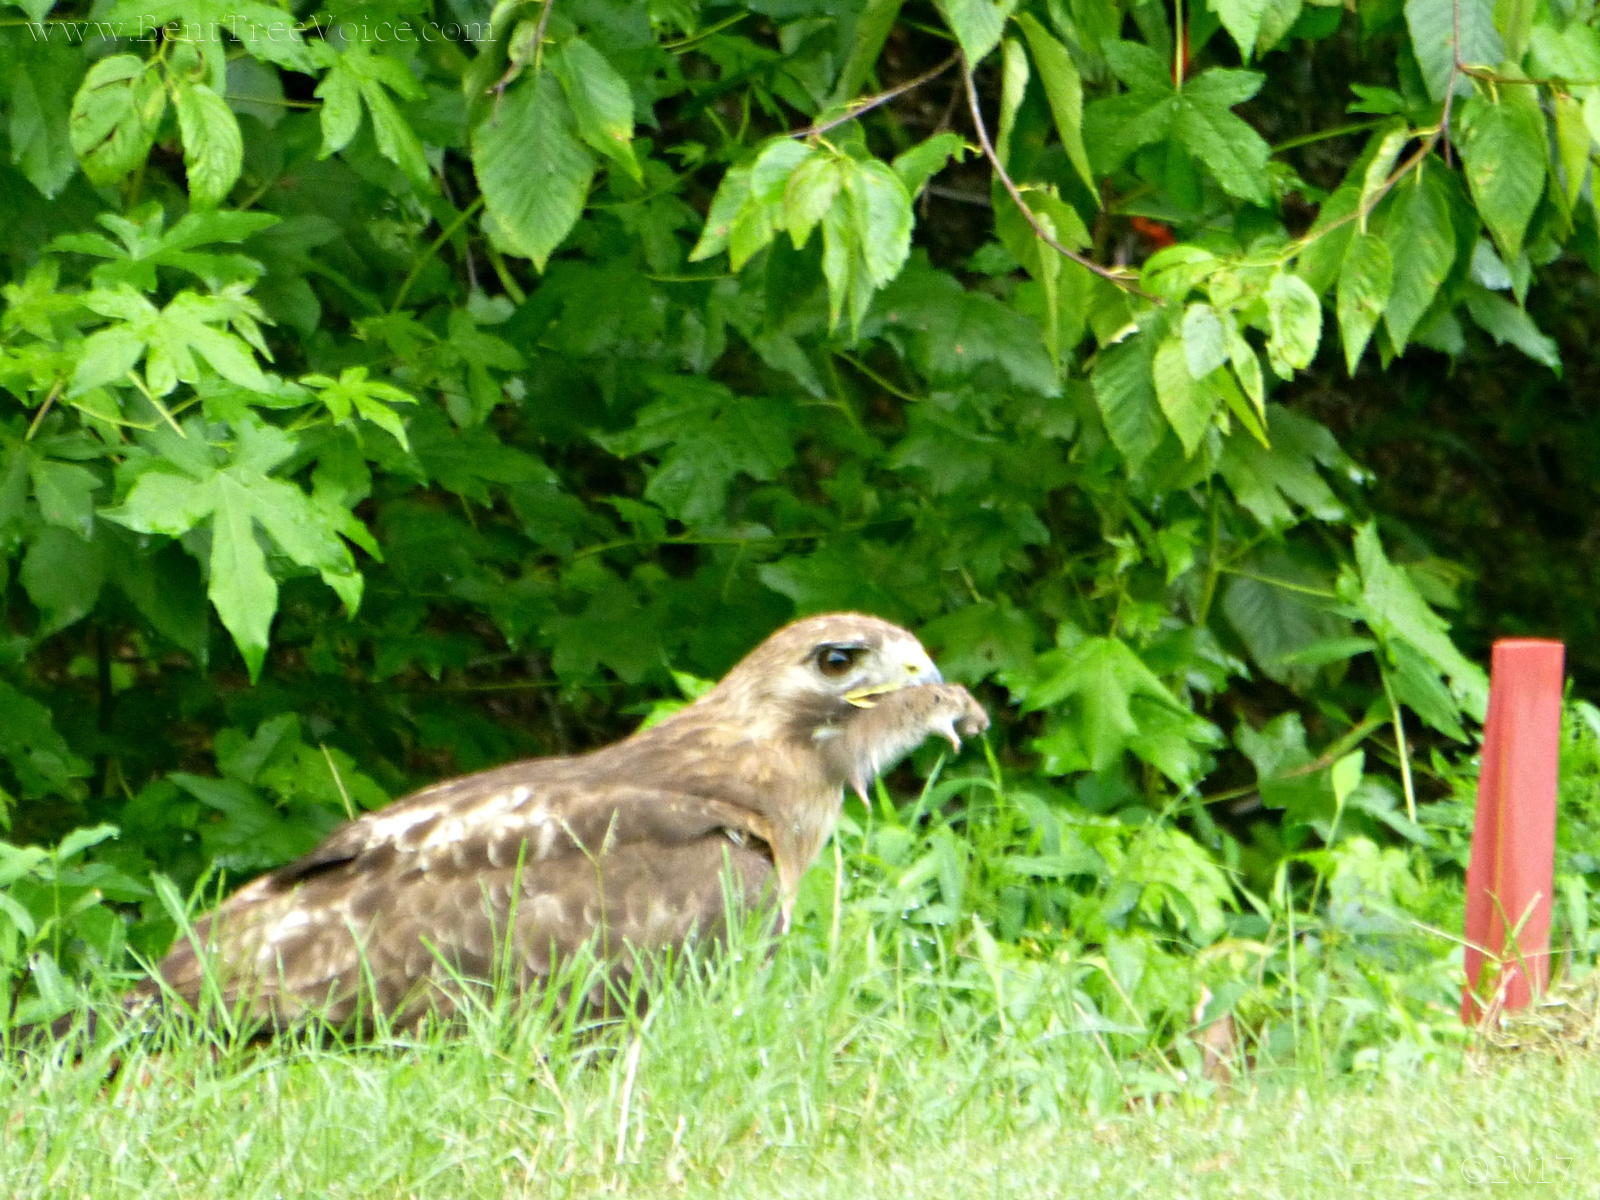 June 20, 2017 - Hawk with prey in Bent Tree